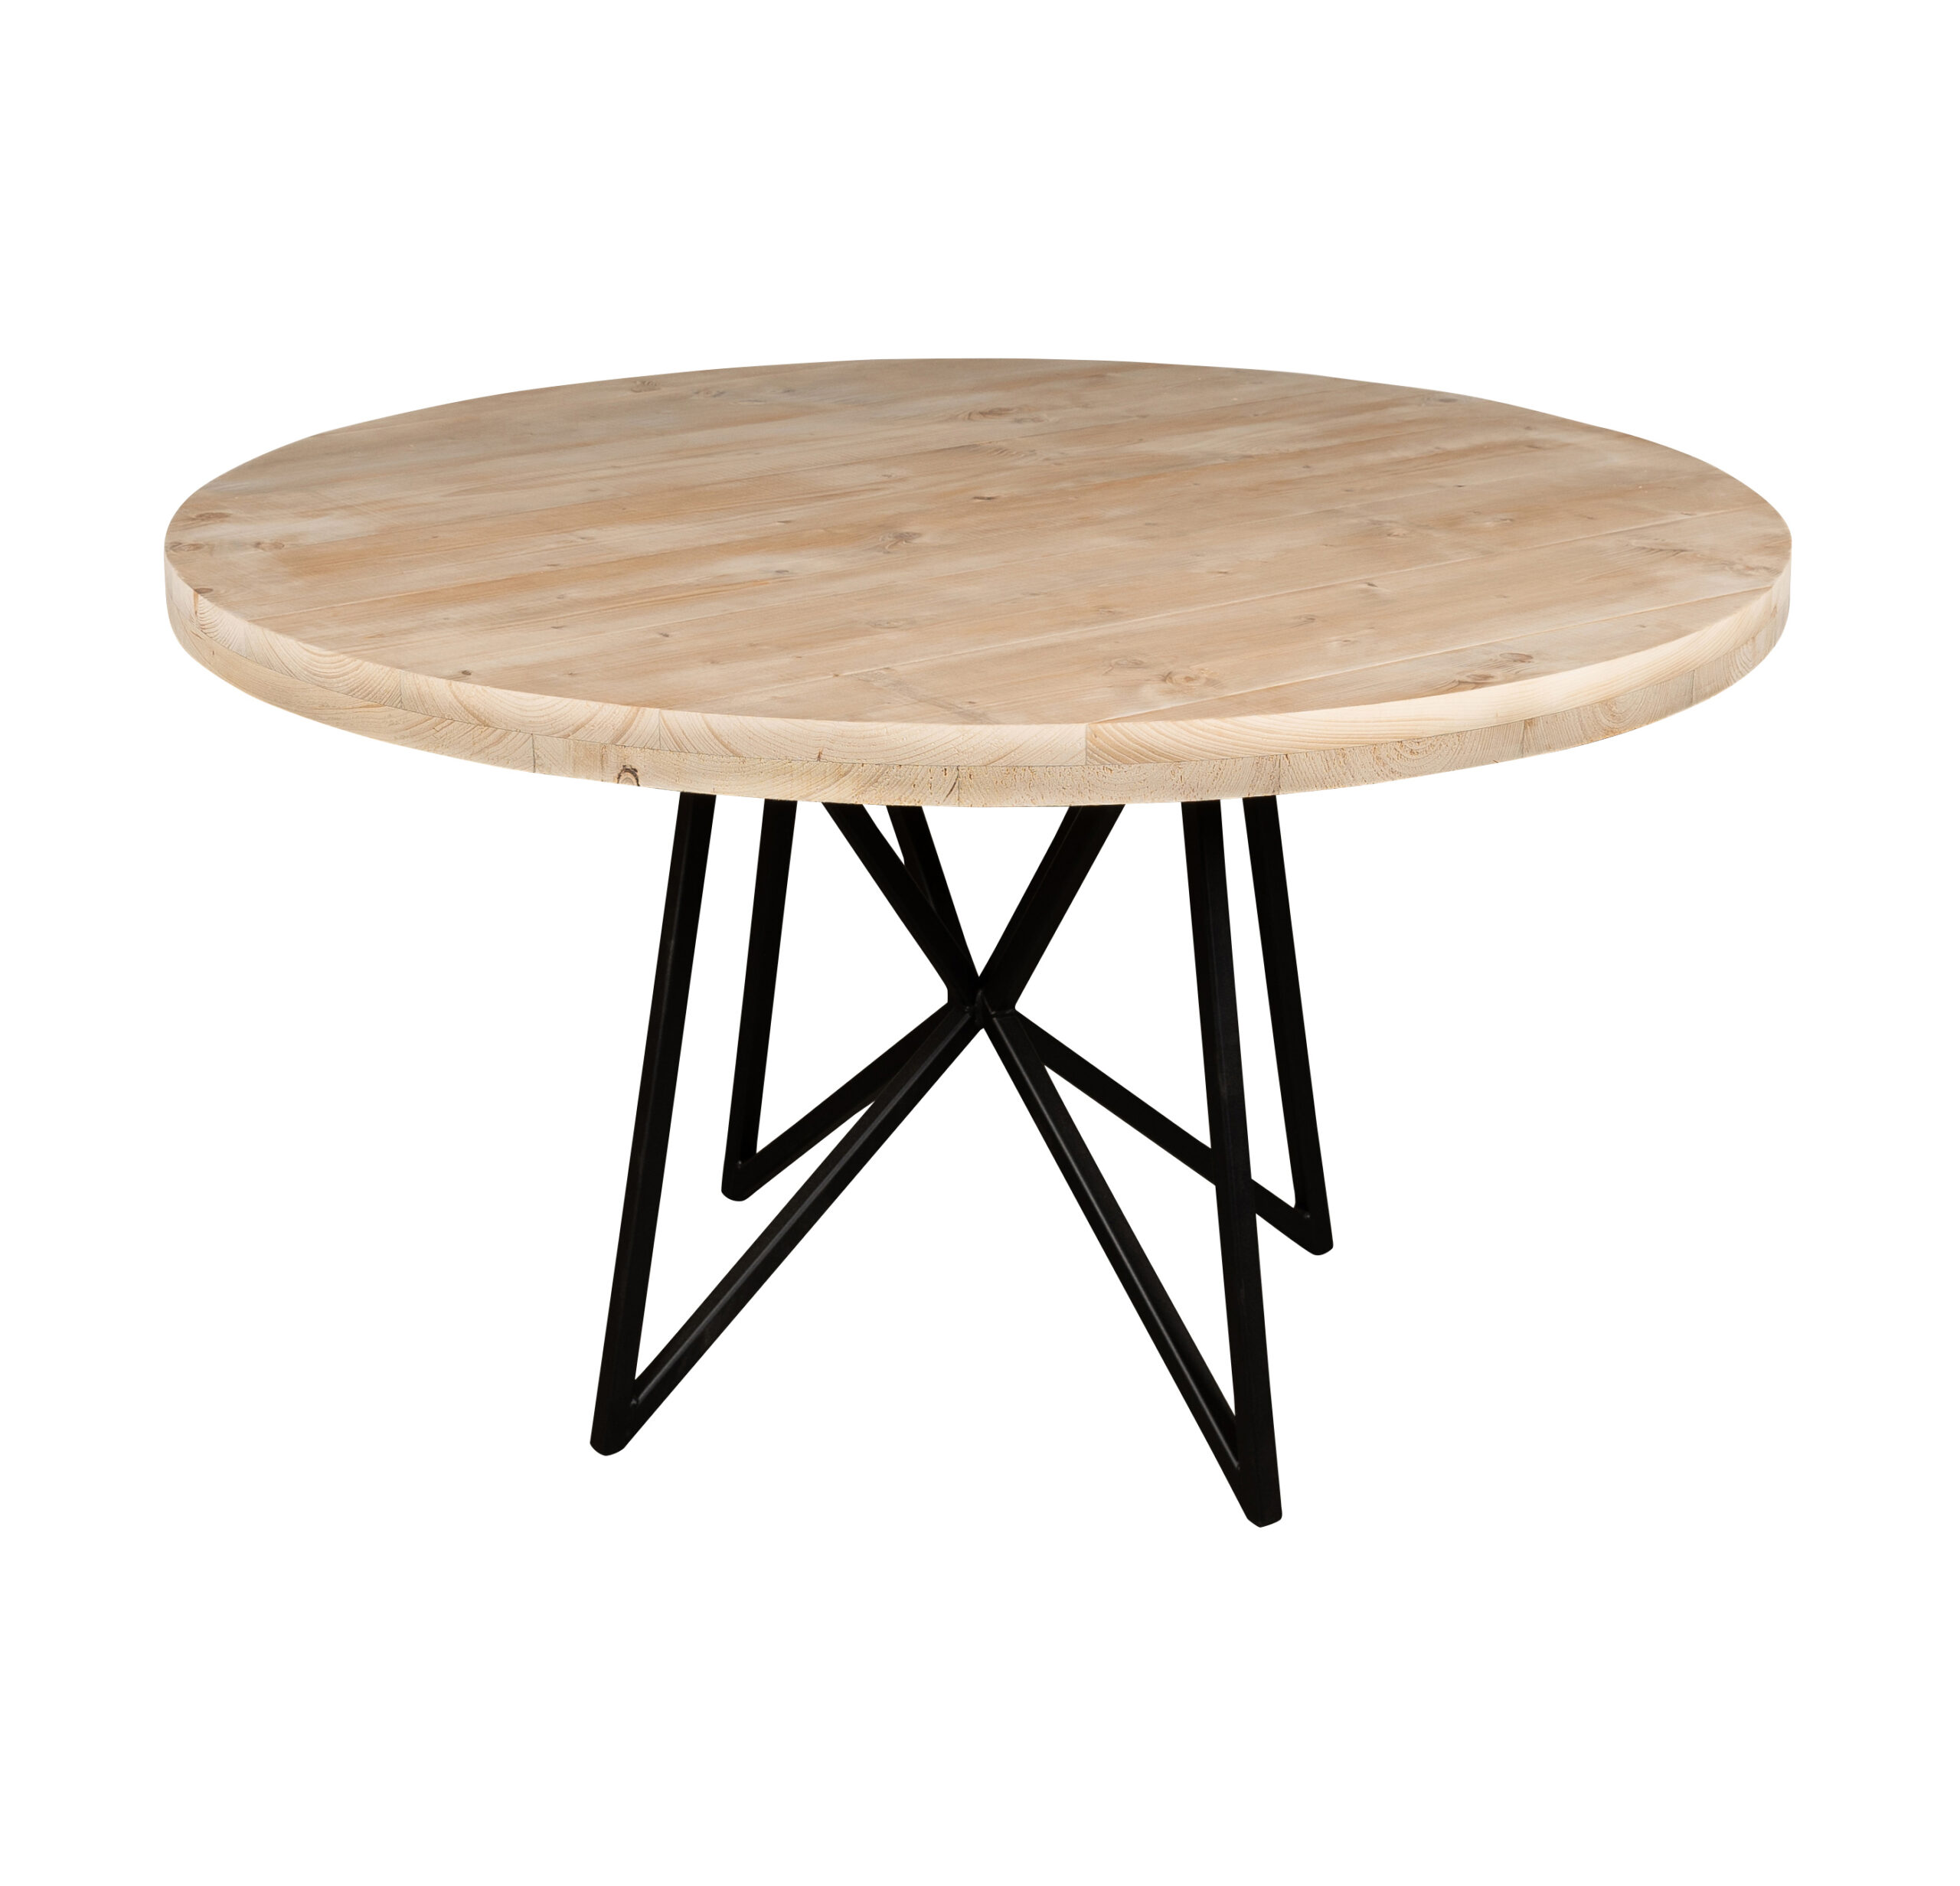 Kameraad Meting handig Tuintafel rond - Mooie ronde houten tafels voor buiten - op maat!